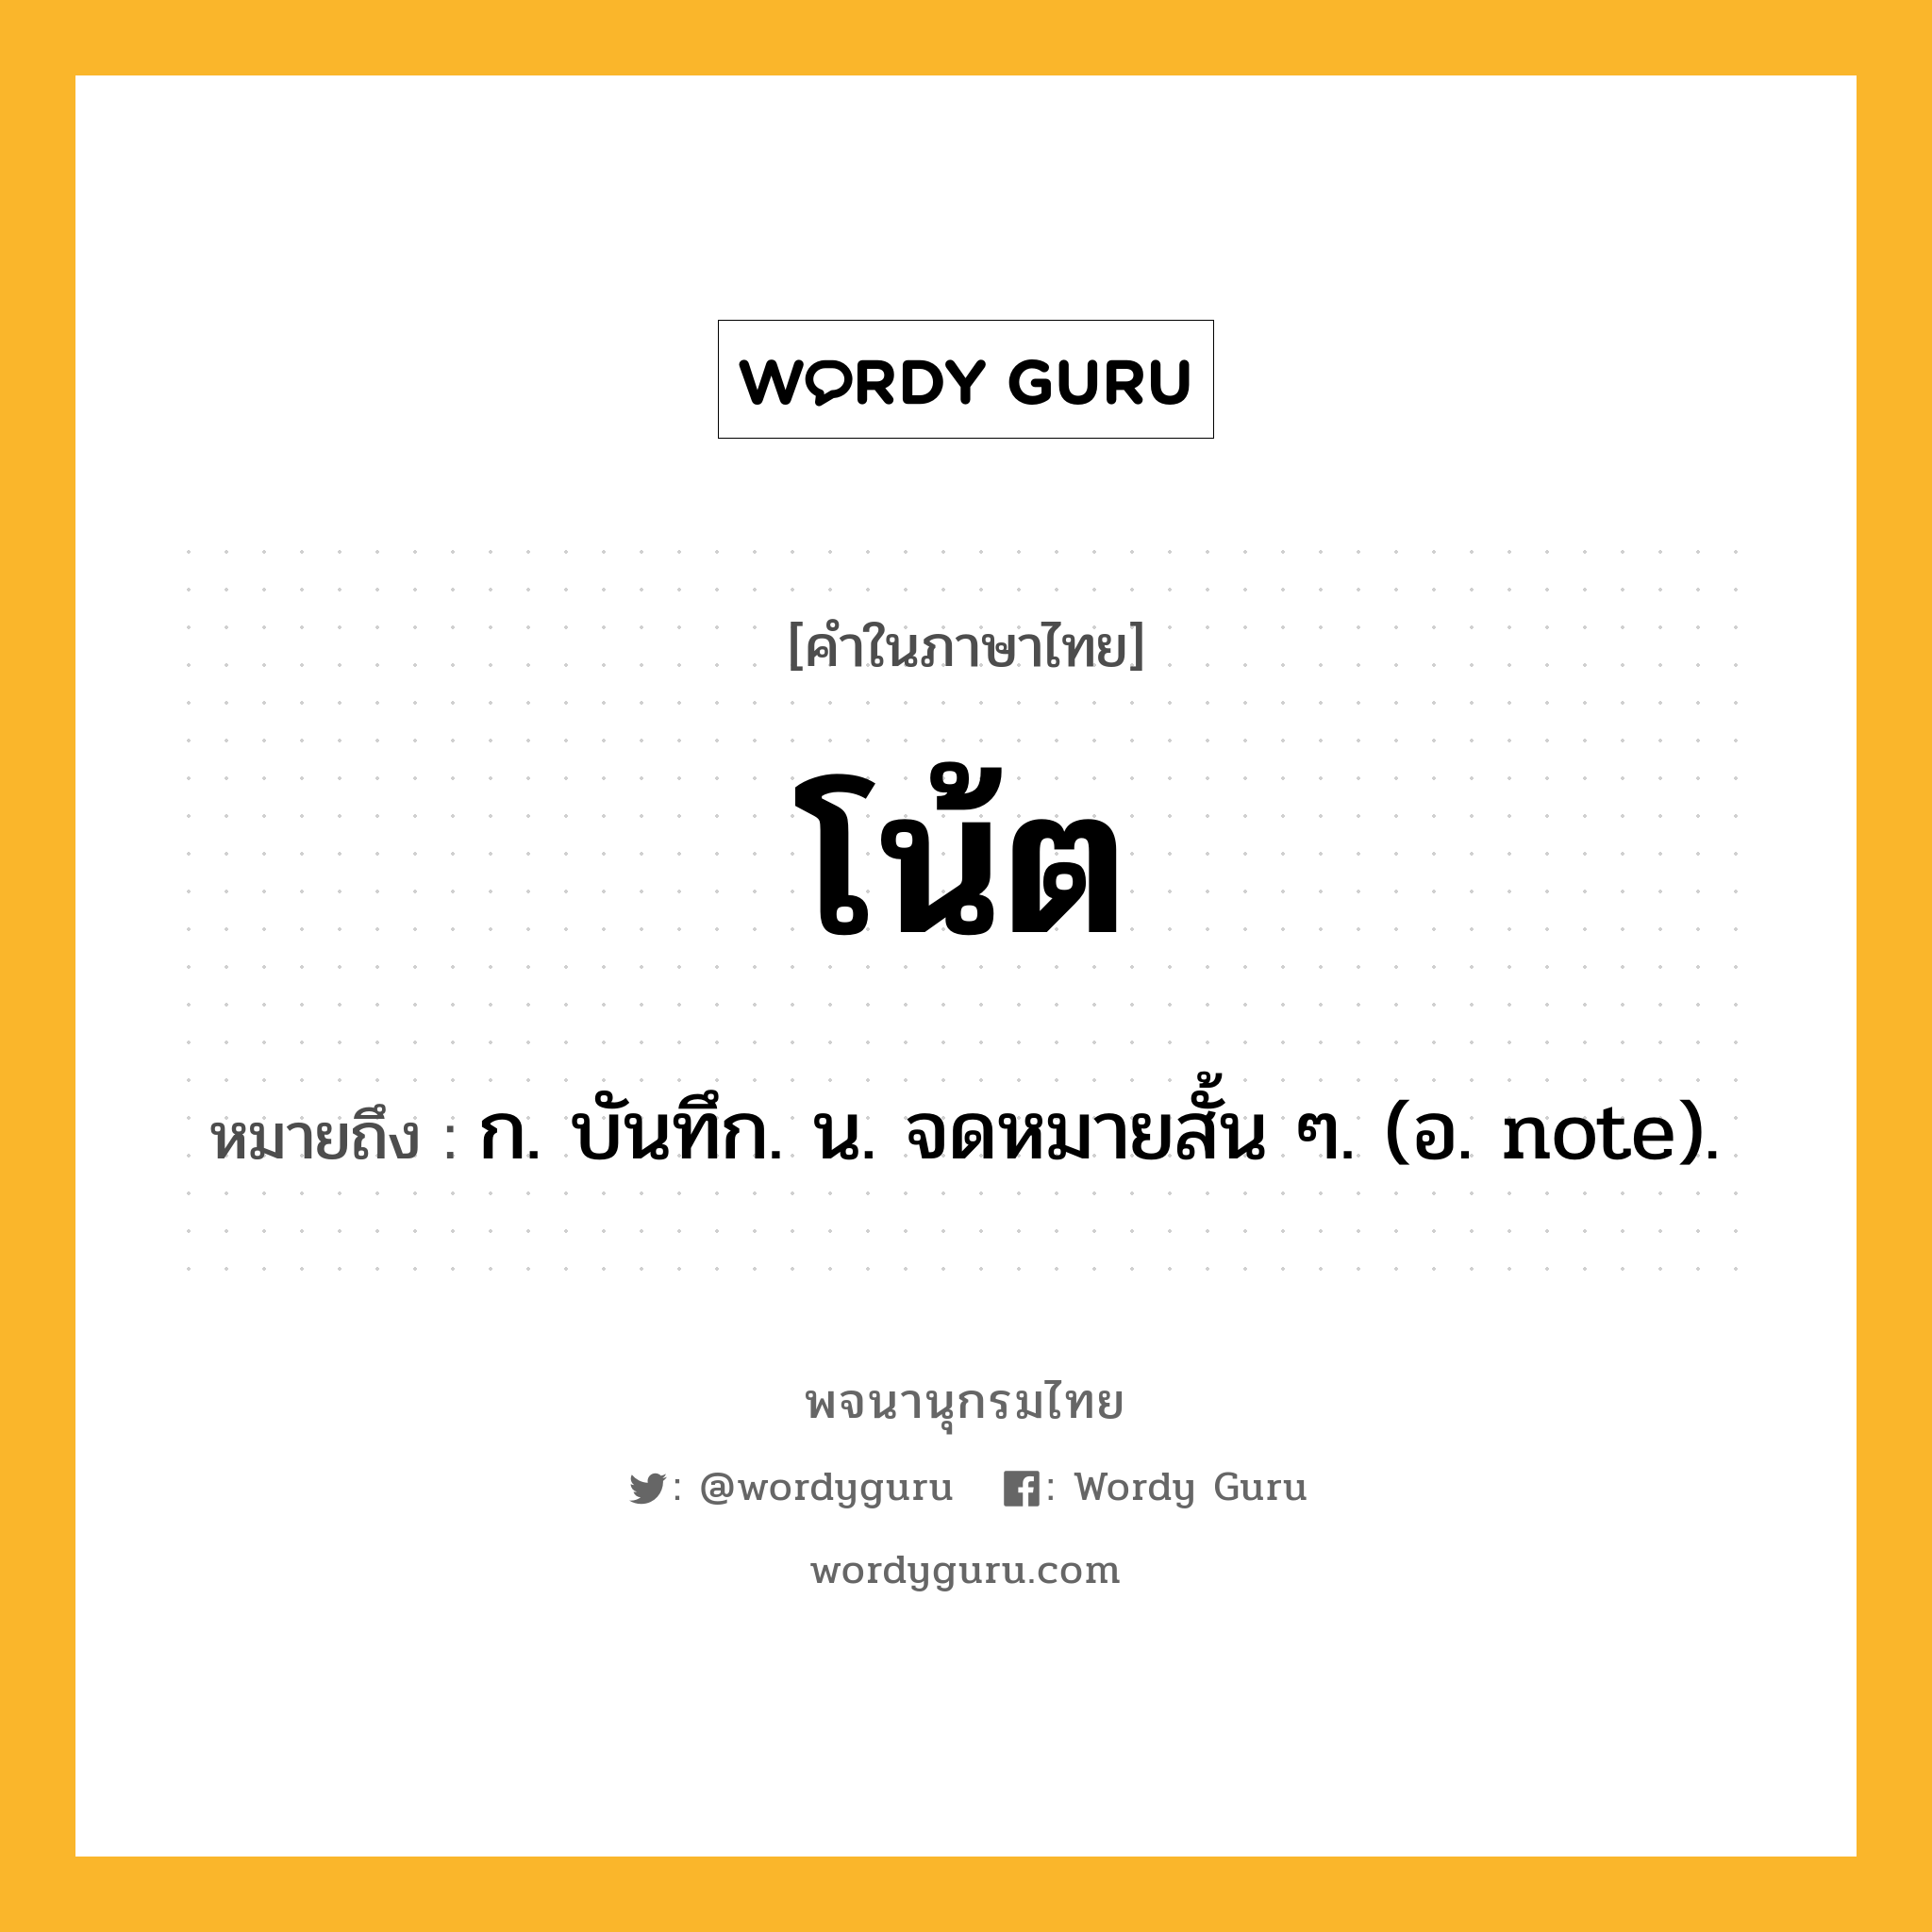 โน้ต ความหมาย หมายถึงอะไร?, คำในภาษาไทย โน้ต หมายถึง ก. บันทึก. น. จดหมายสั้น ๆ. (อ. note).